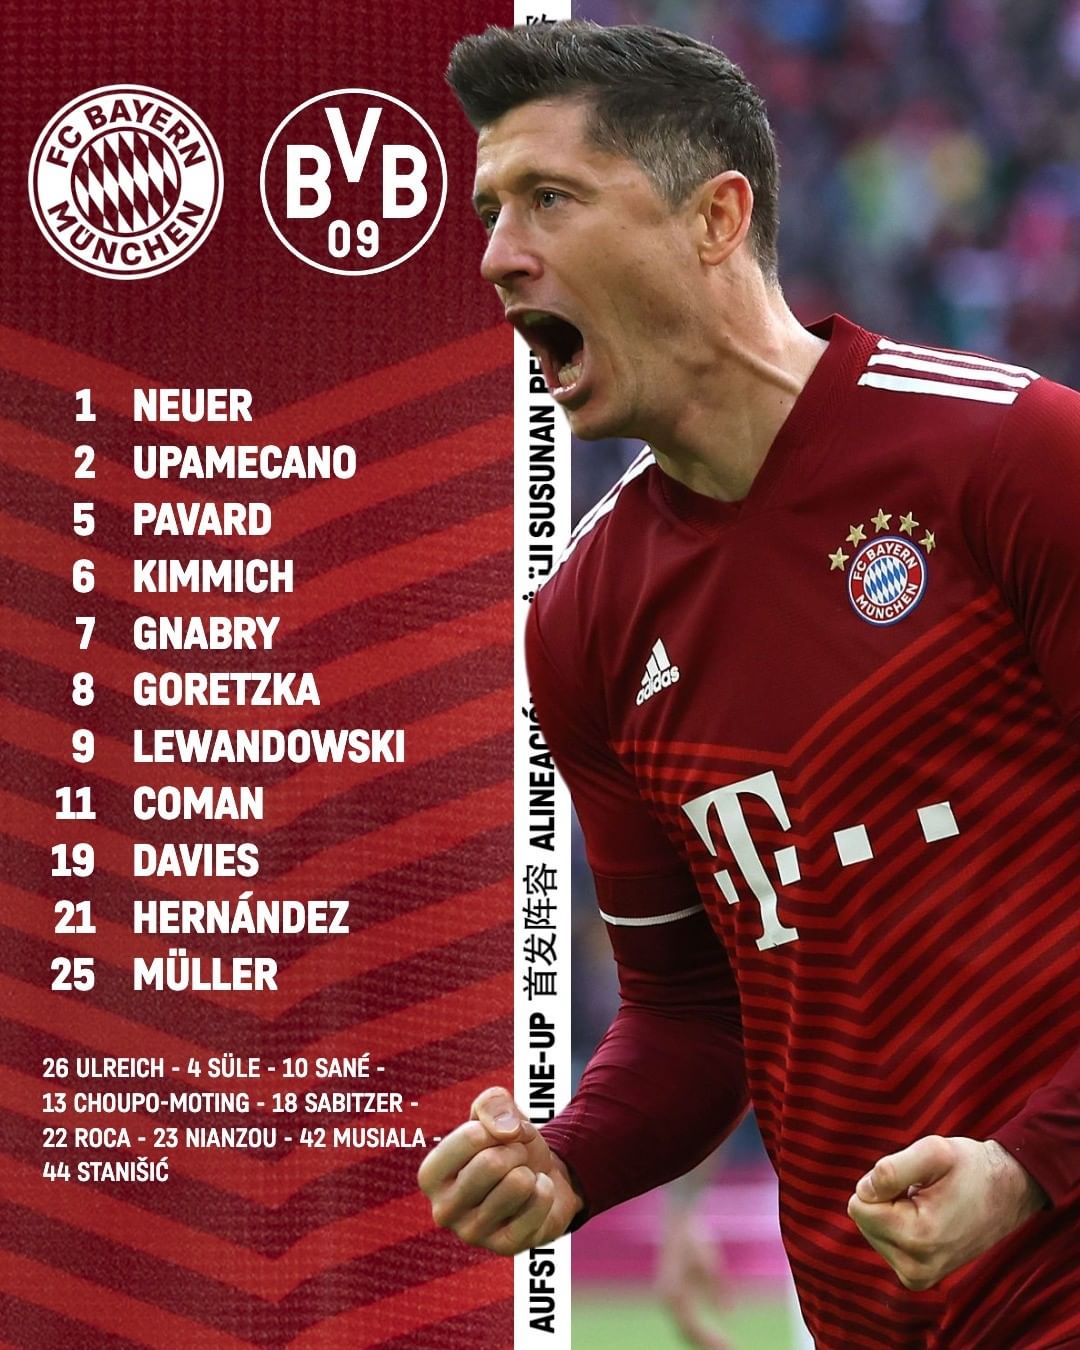 Bayern vs Dortmund - Match Reports, Summary (Bayern 3- Dortmund 1)